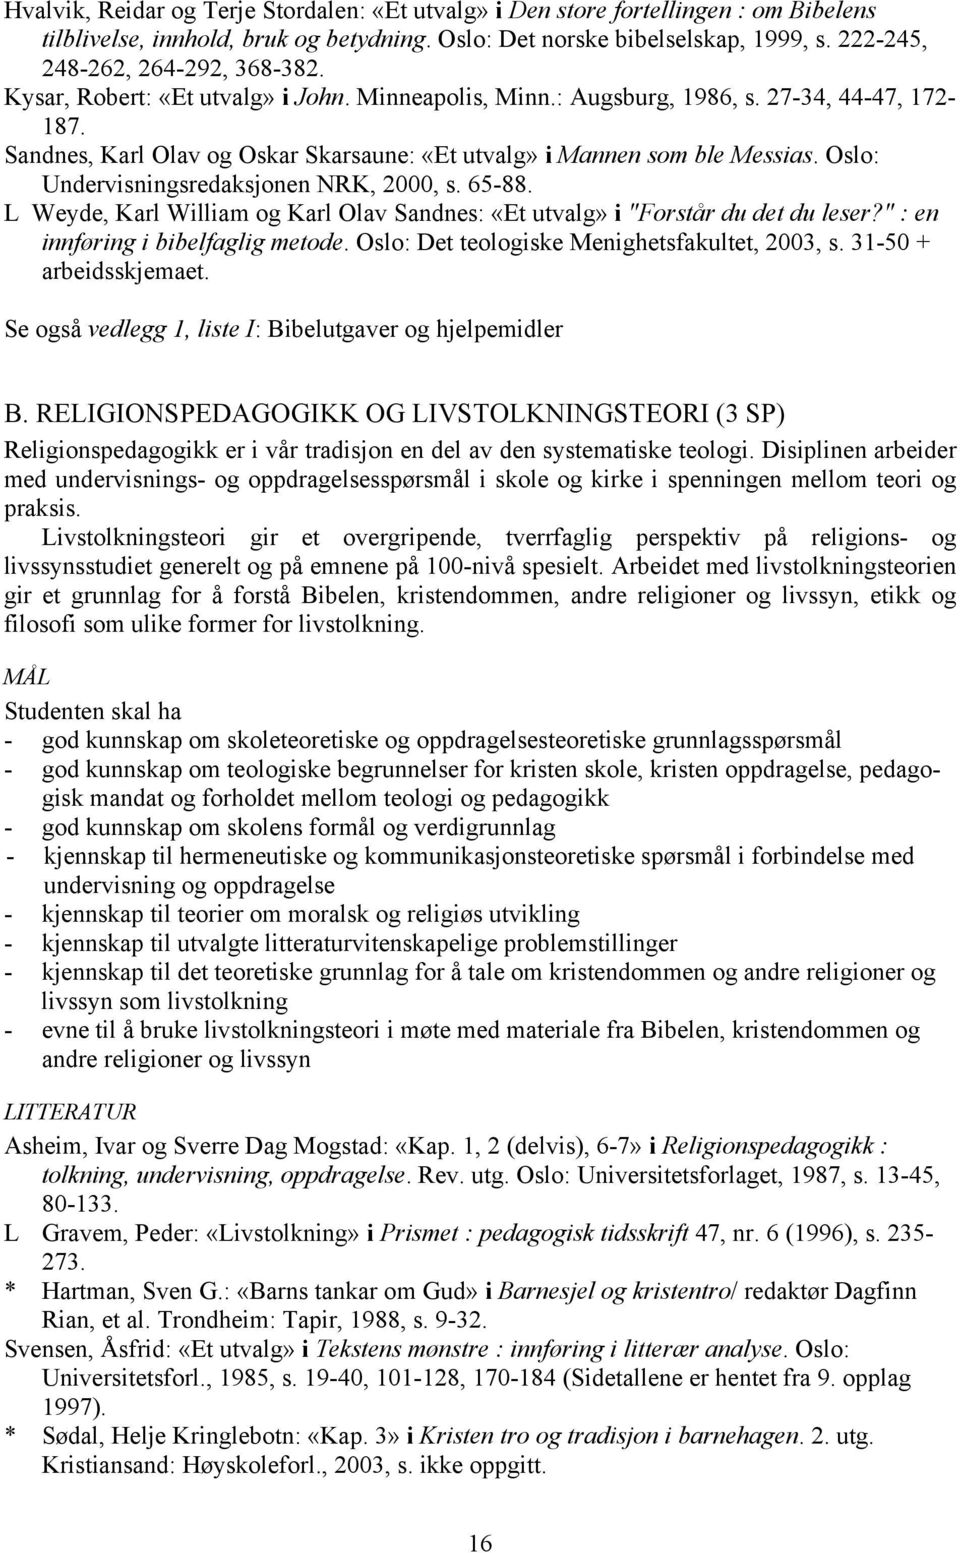 Sandnes, Karl Olav og Oskar Skarsaune: «Et utvalg» i Mannen som ble Messias. Oslo: Undervisningsredaksjonen NRK, 2000, s. 65-88.